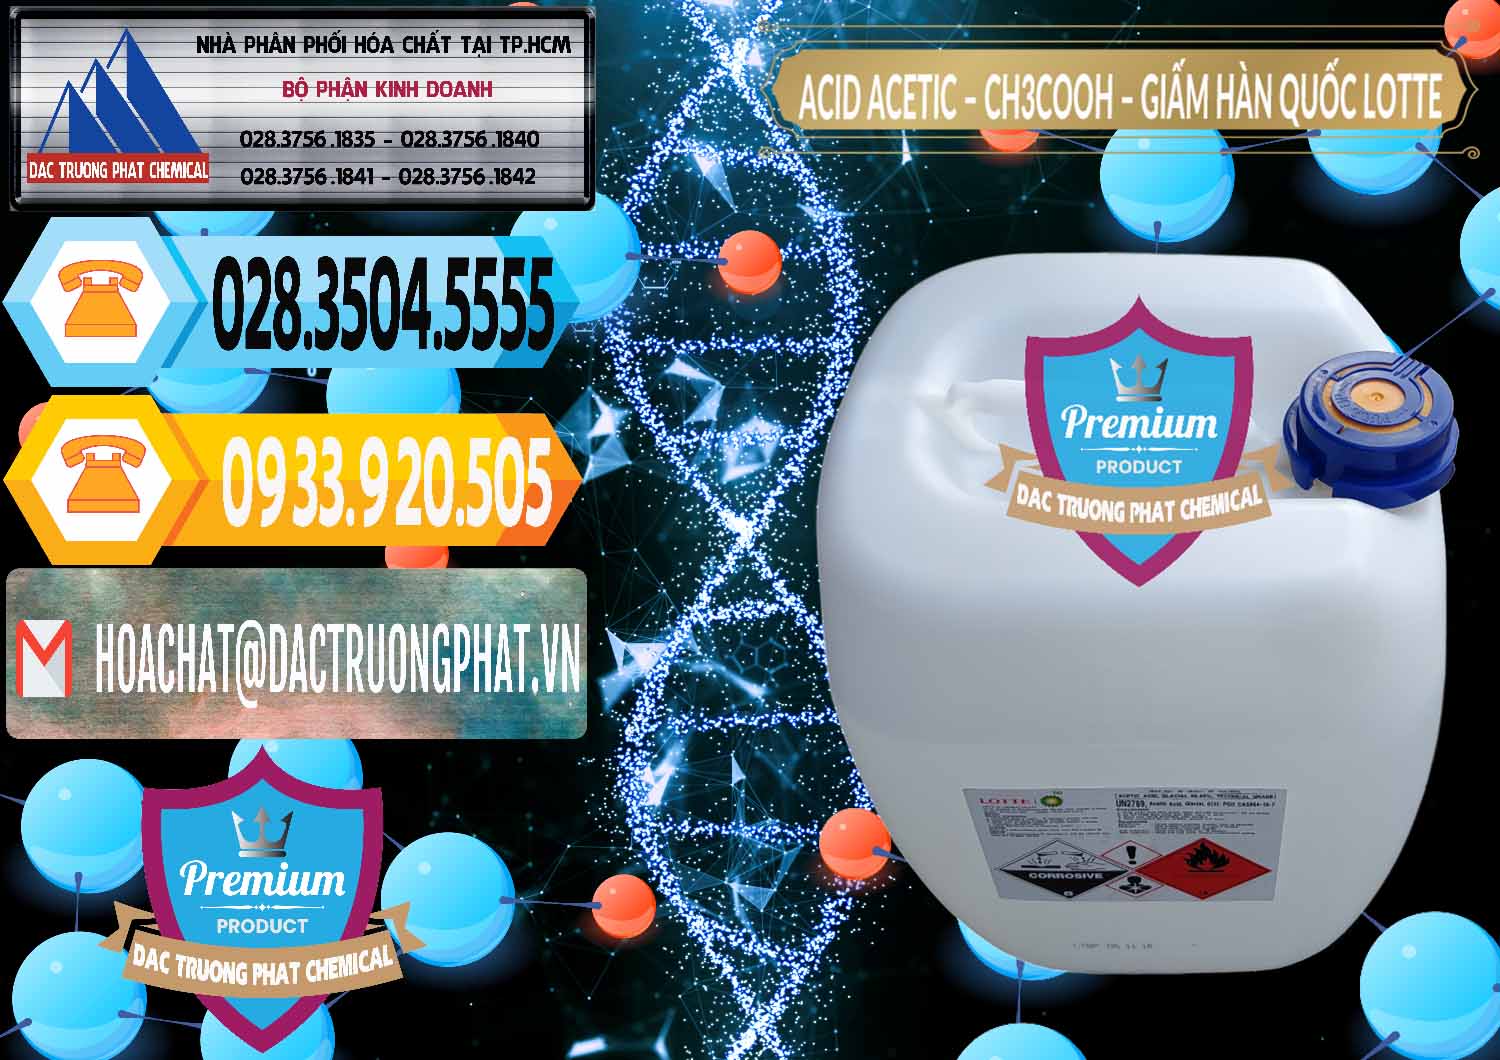 Nơi chuyên cung ứng _ bán Acetic Acid – Axit Acetic Hàn Quốc Lotte Korea - 0002 - Công ty chuyên phân phối & cung ứng hóa chất tại TP.HCM - hoachattayrua.net